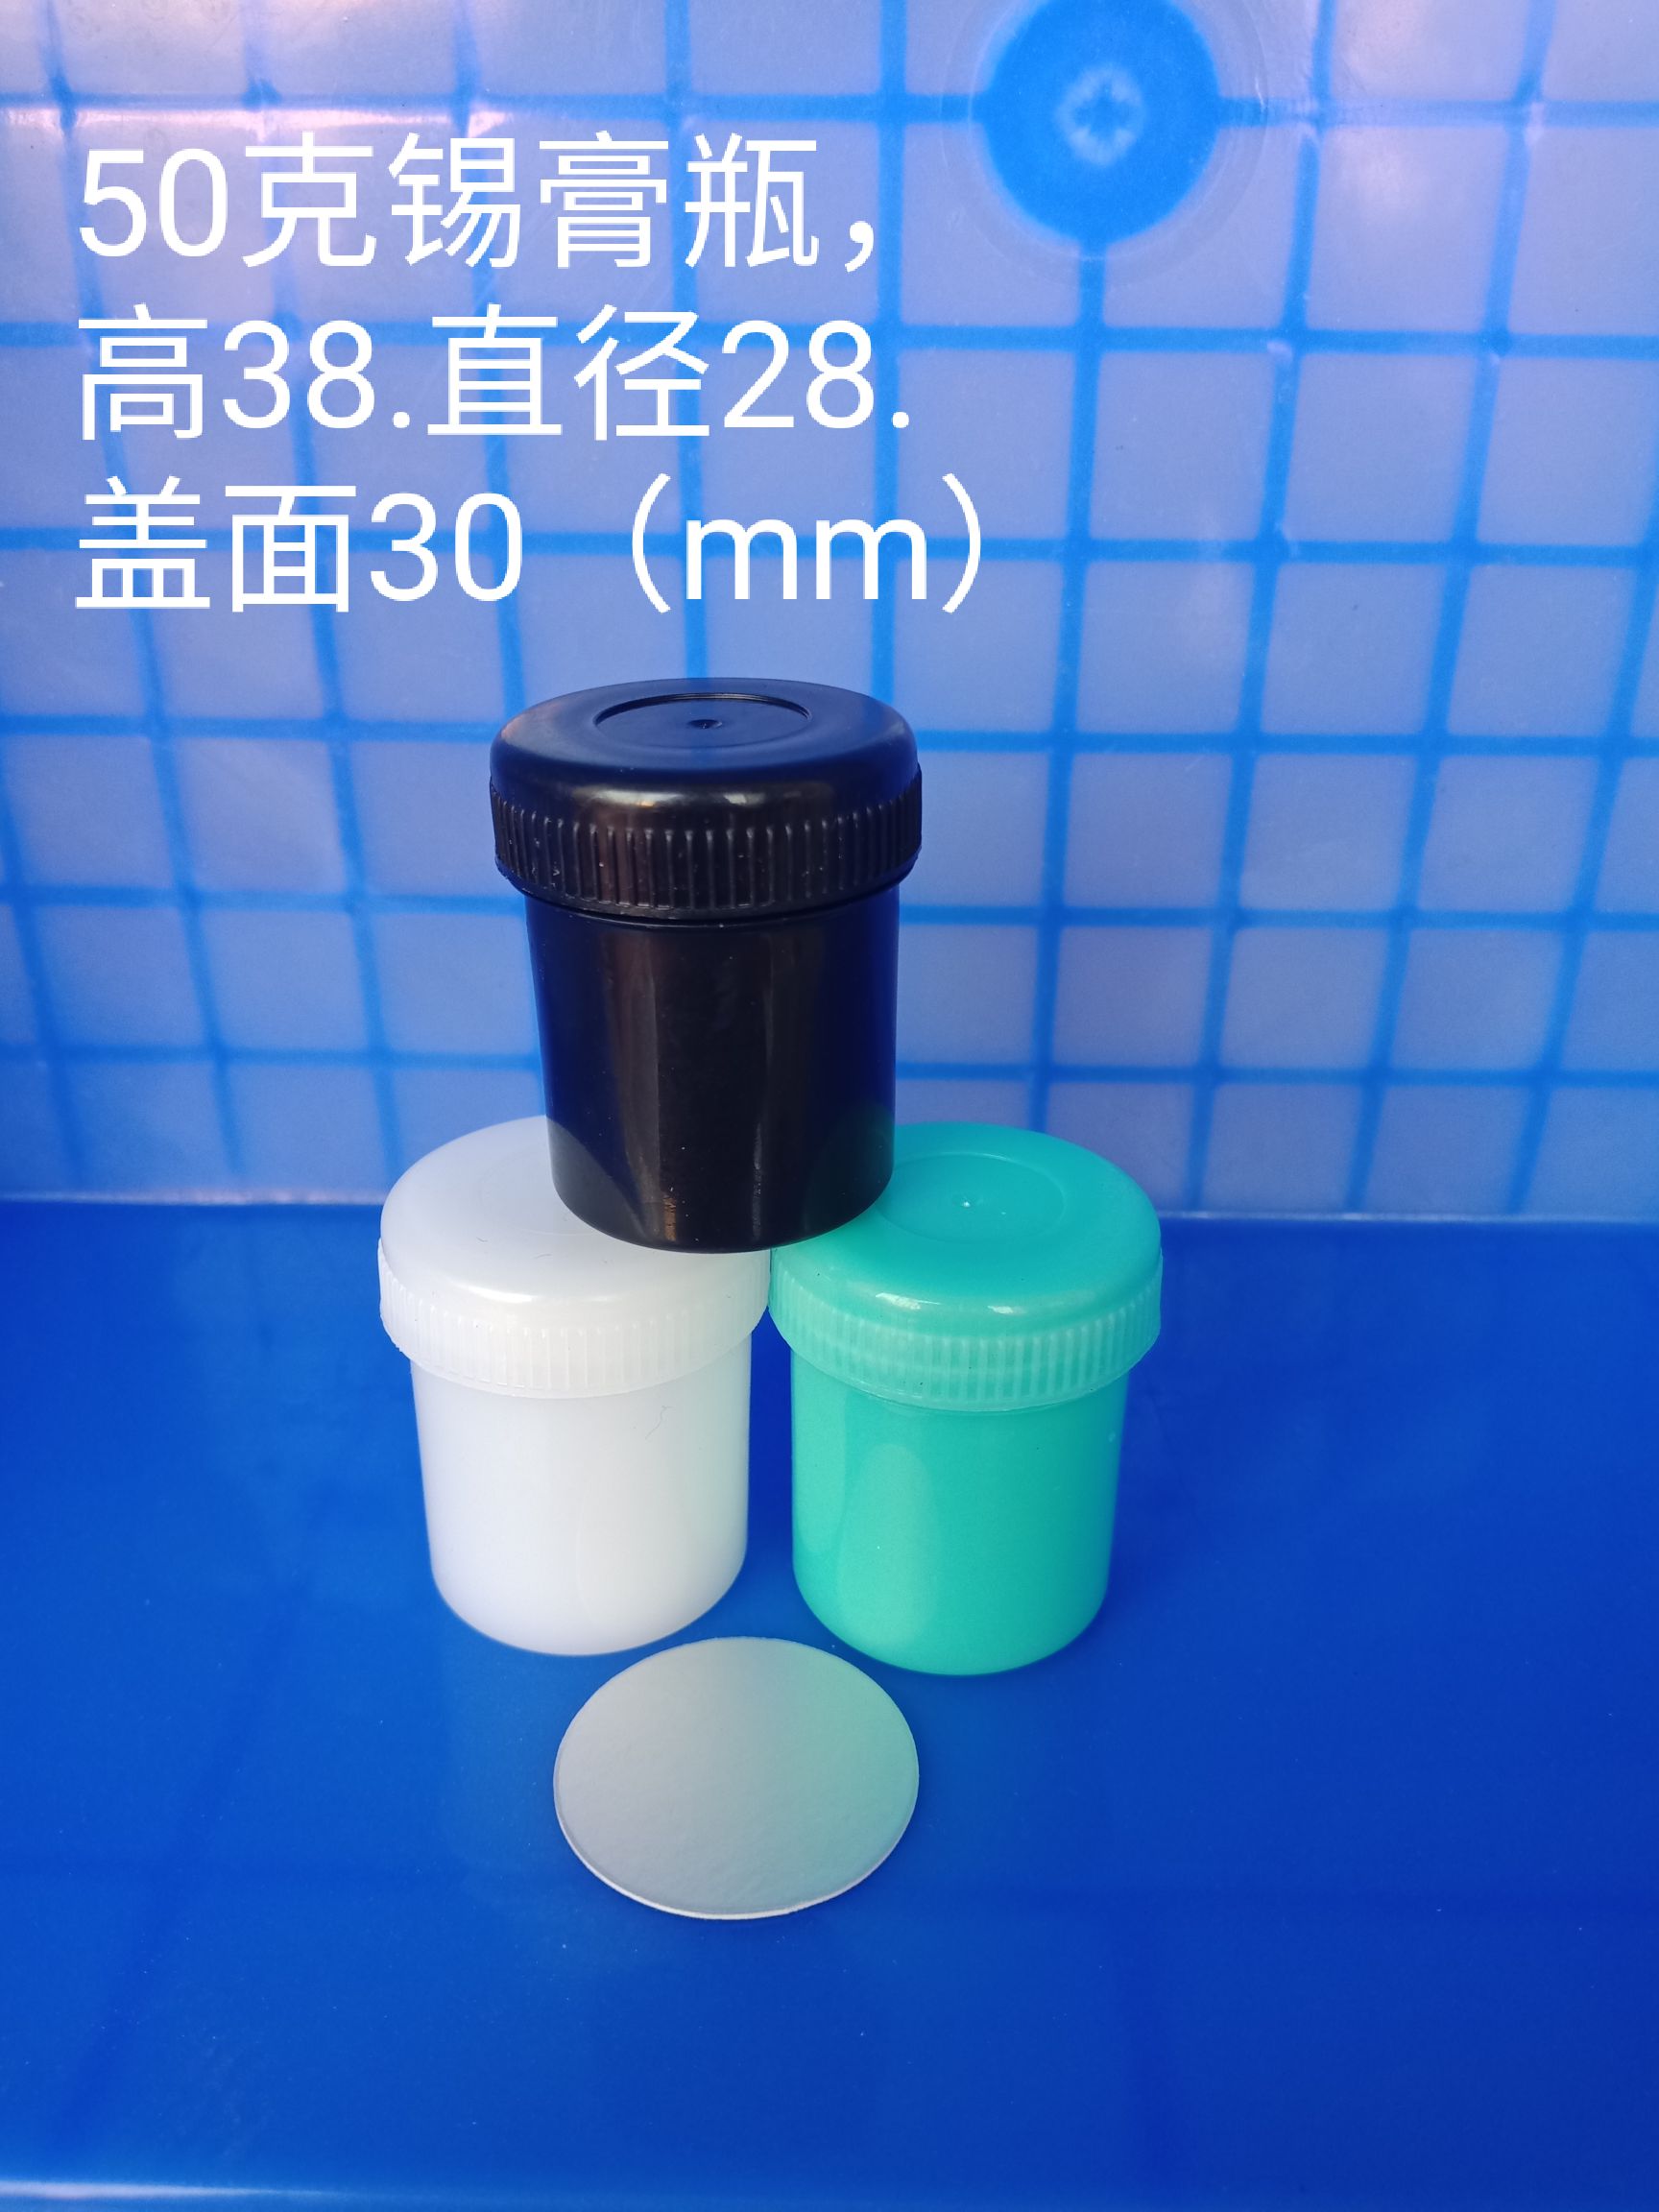 供应50克锡膏罐锡膏瓶 锡膏罐 广东省直销样品罐 面霜瓶图片